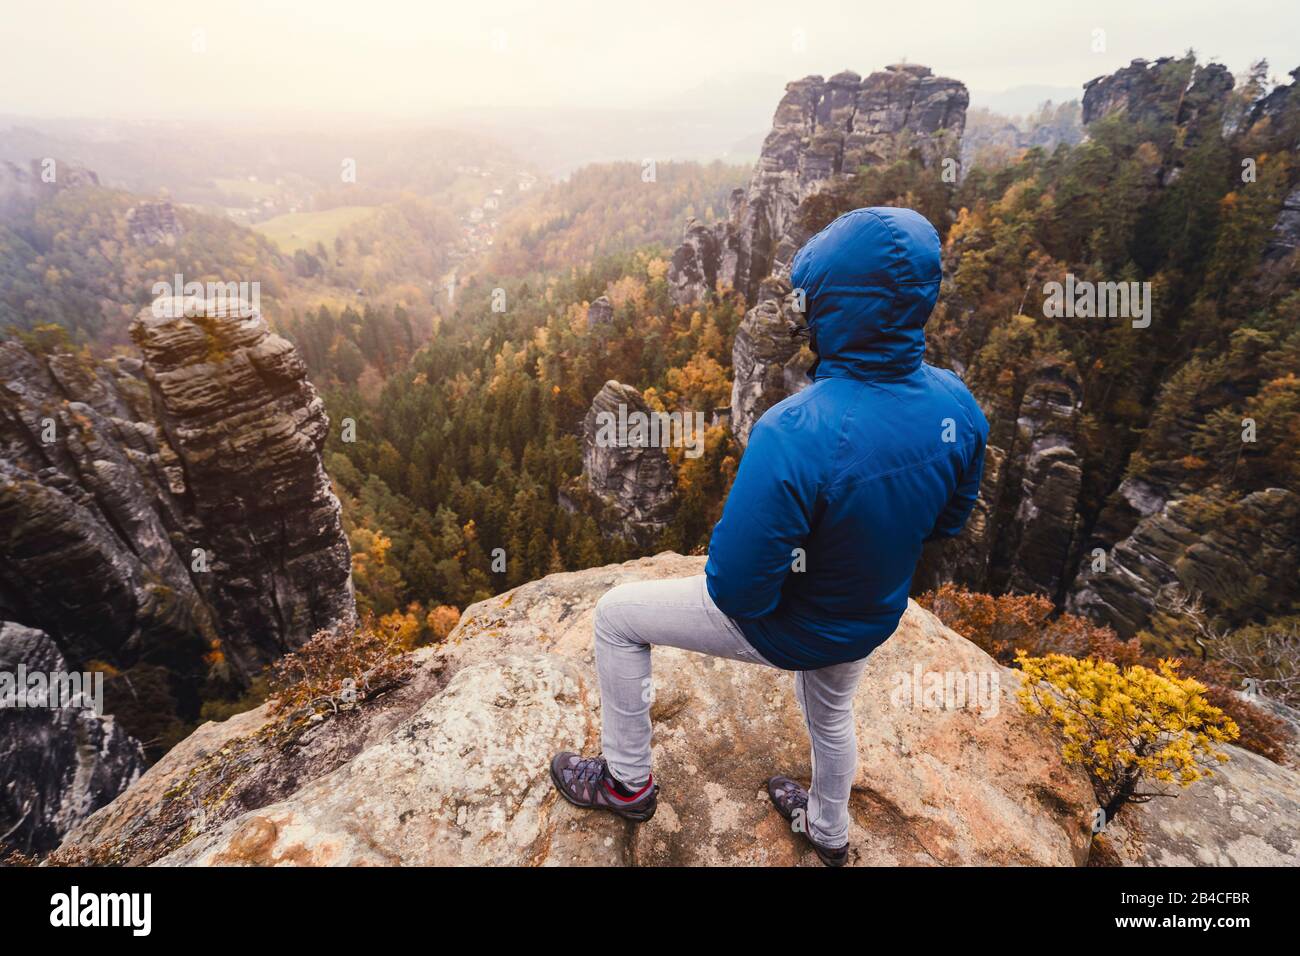 Wanderer steht auf dem Gipfel eines Berges, genießt die Aussicht über Berge und Wälder im Tal, Reise-Lifestyle-Abenguer-Konzept Banque D'Images